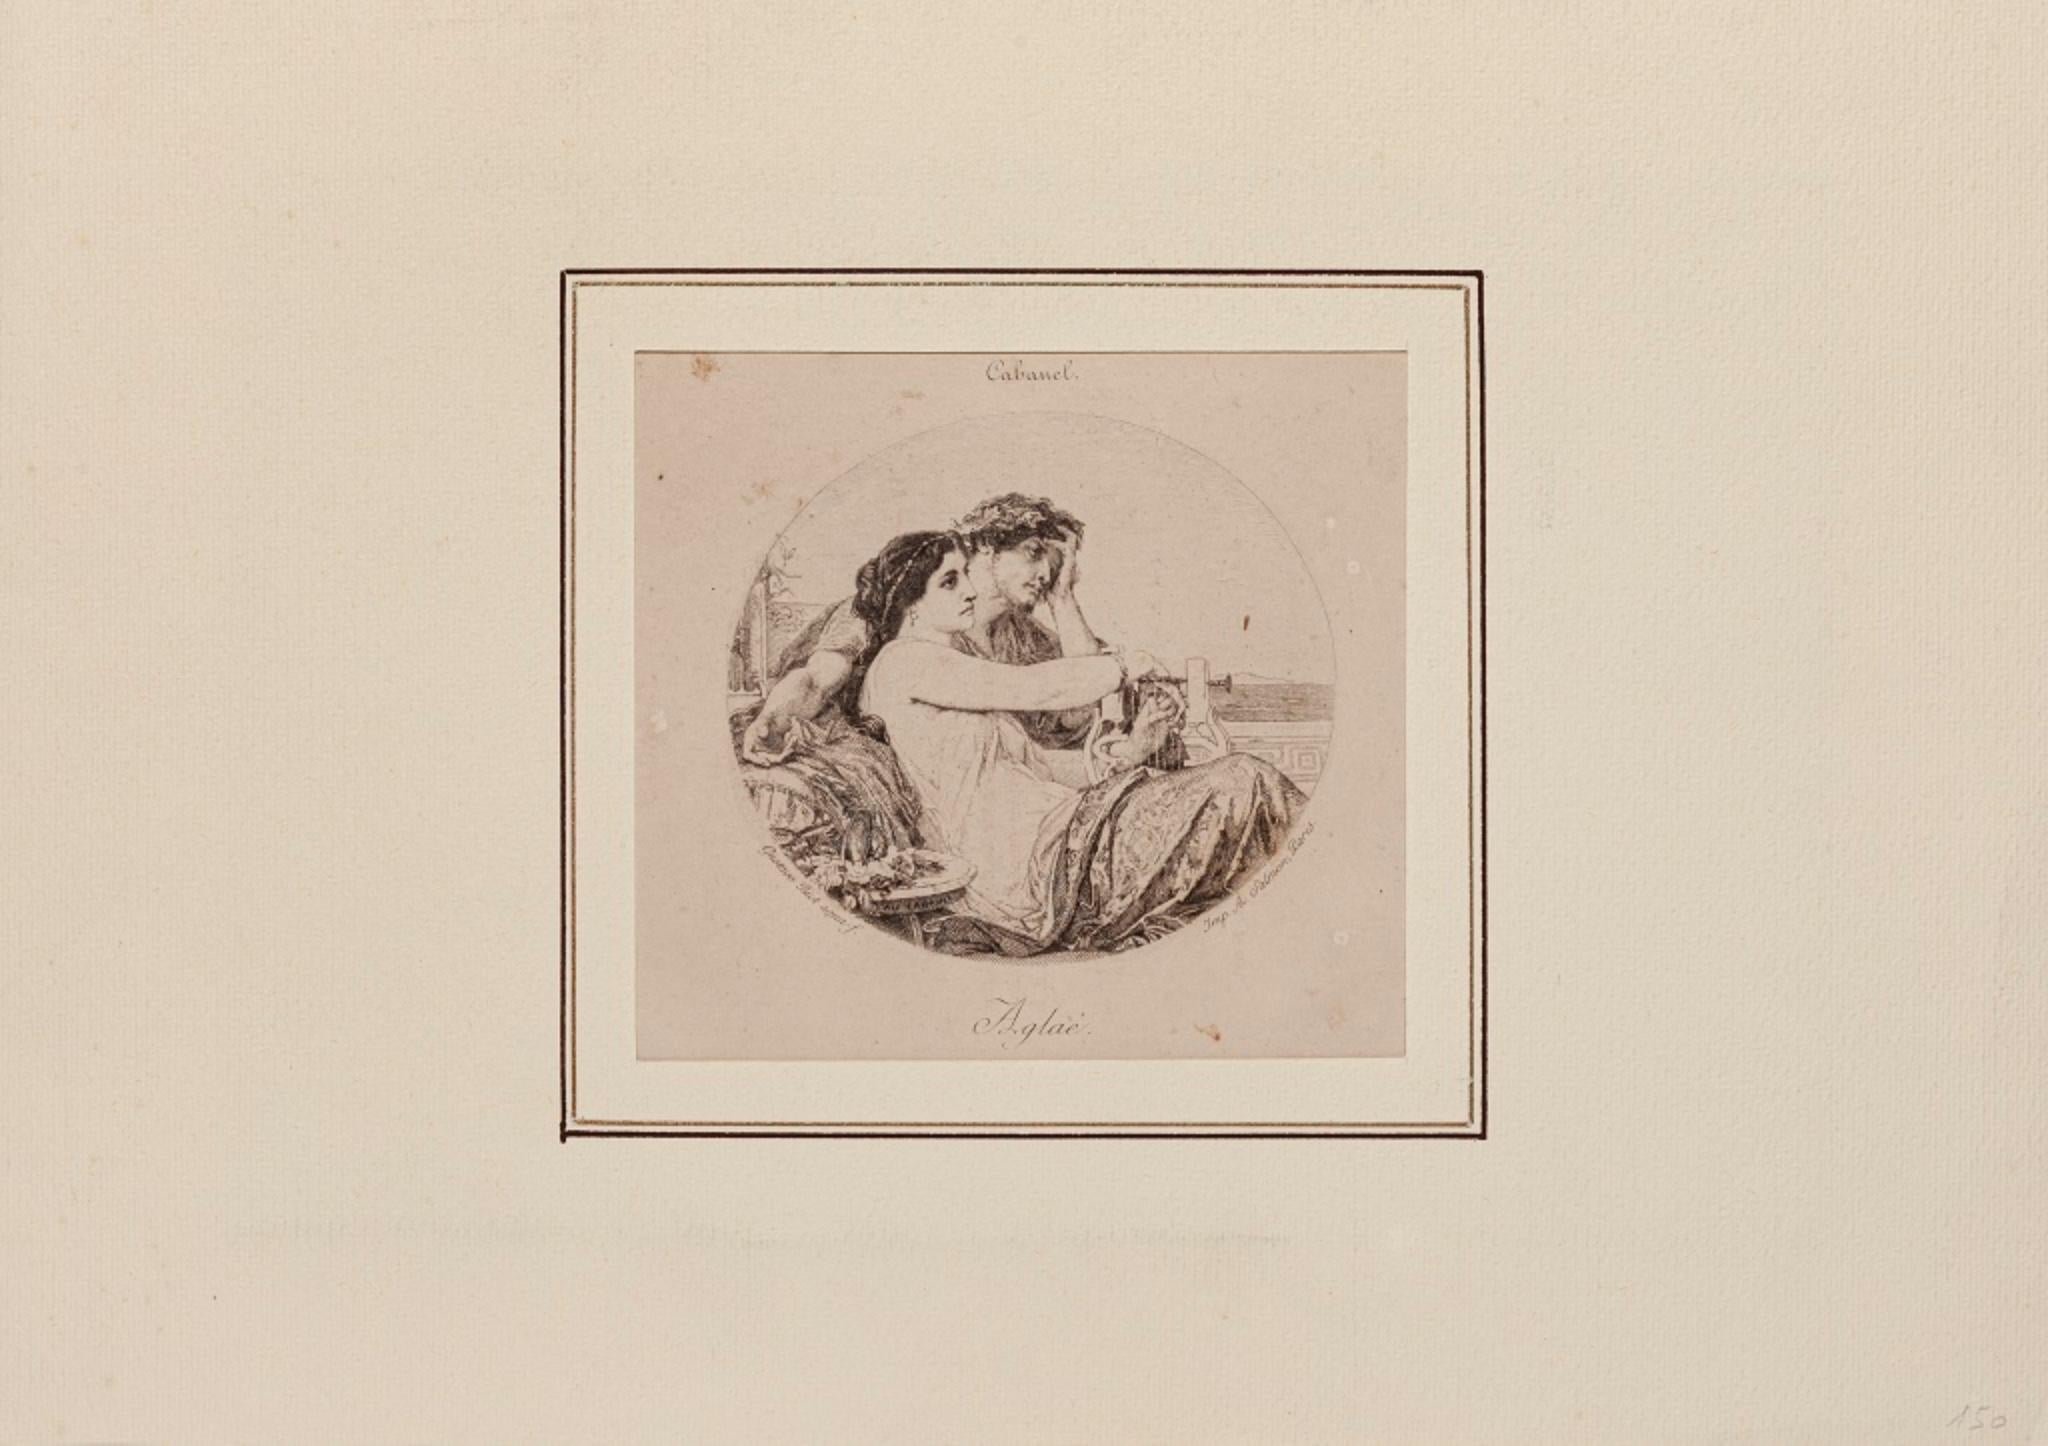 Aglaé ist eine Original-Radierung von Gustave Joseph Biot d'aprés Cabanel (1900).

Das Kunstwerk ist bis auf das abgenutzte und vergilbte Papier an den Rändern in gutem Zustand.

Montiert auf einem cremefarbenen Passepartout aus Karton (24,5x35).